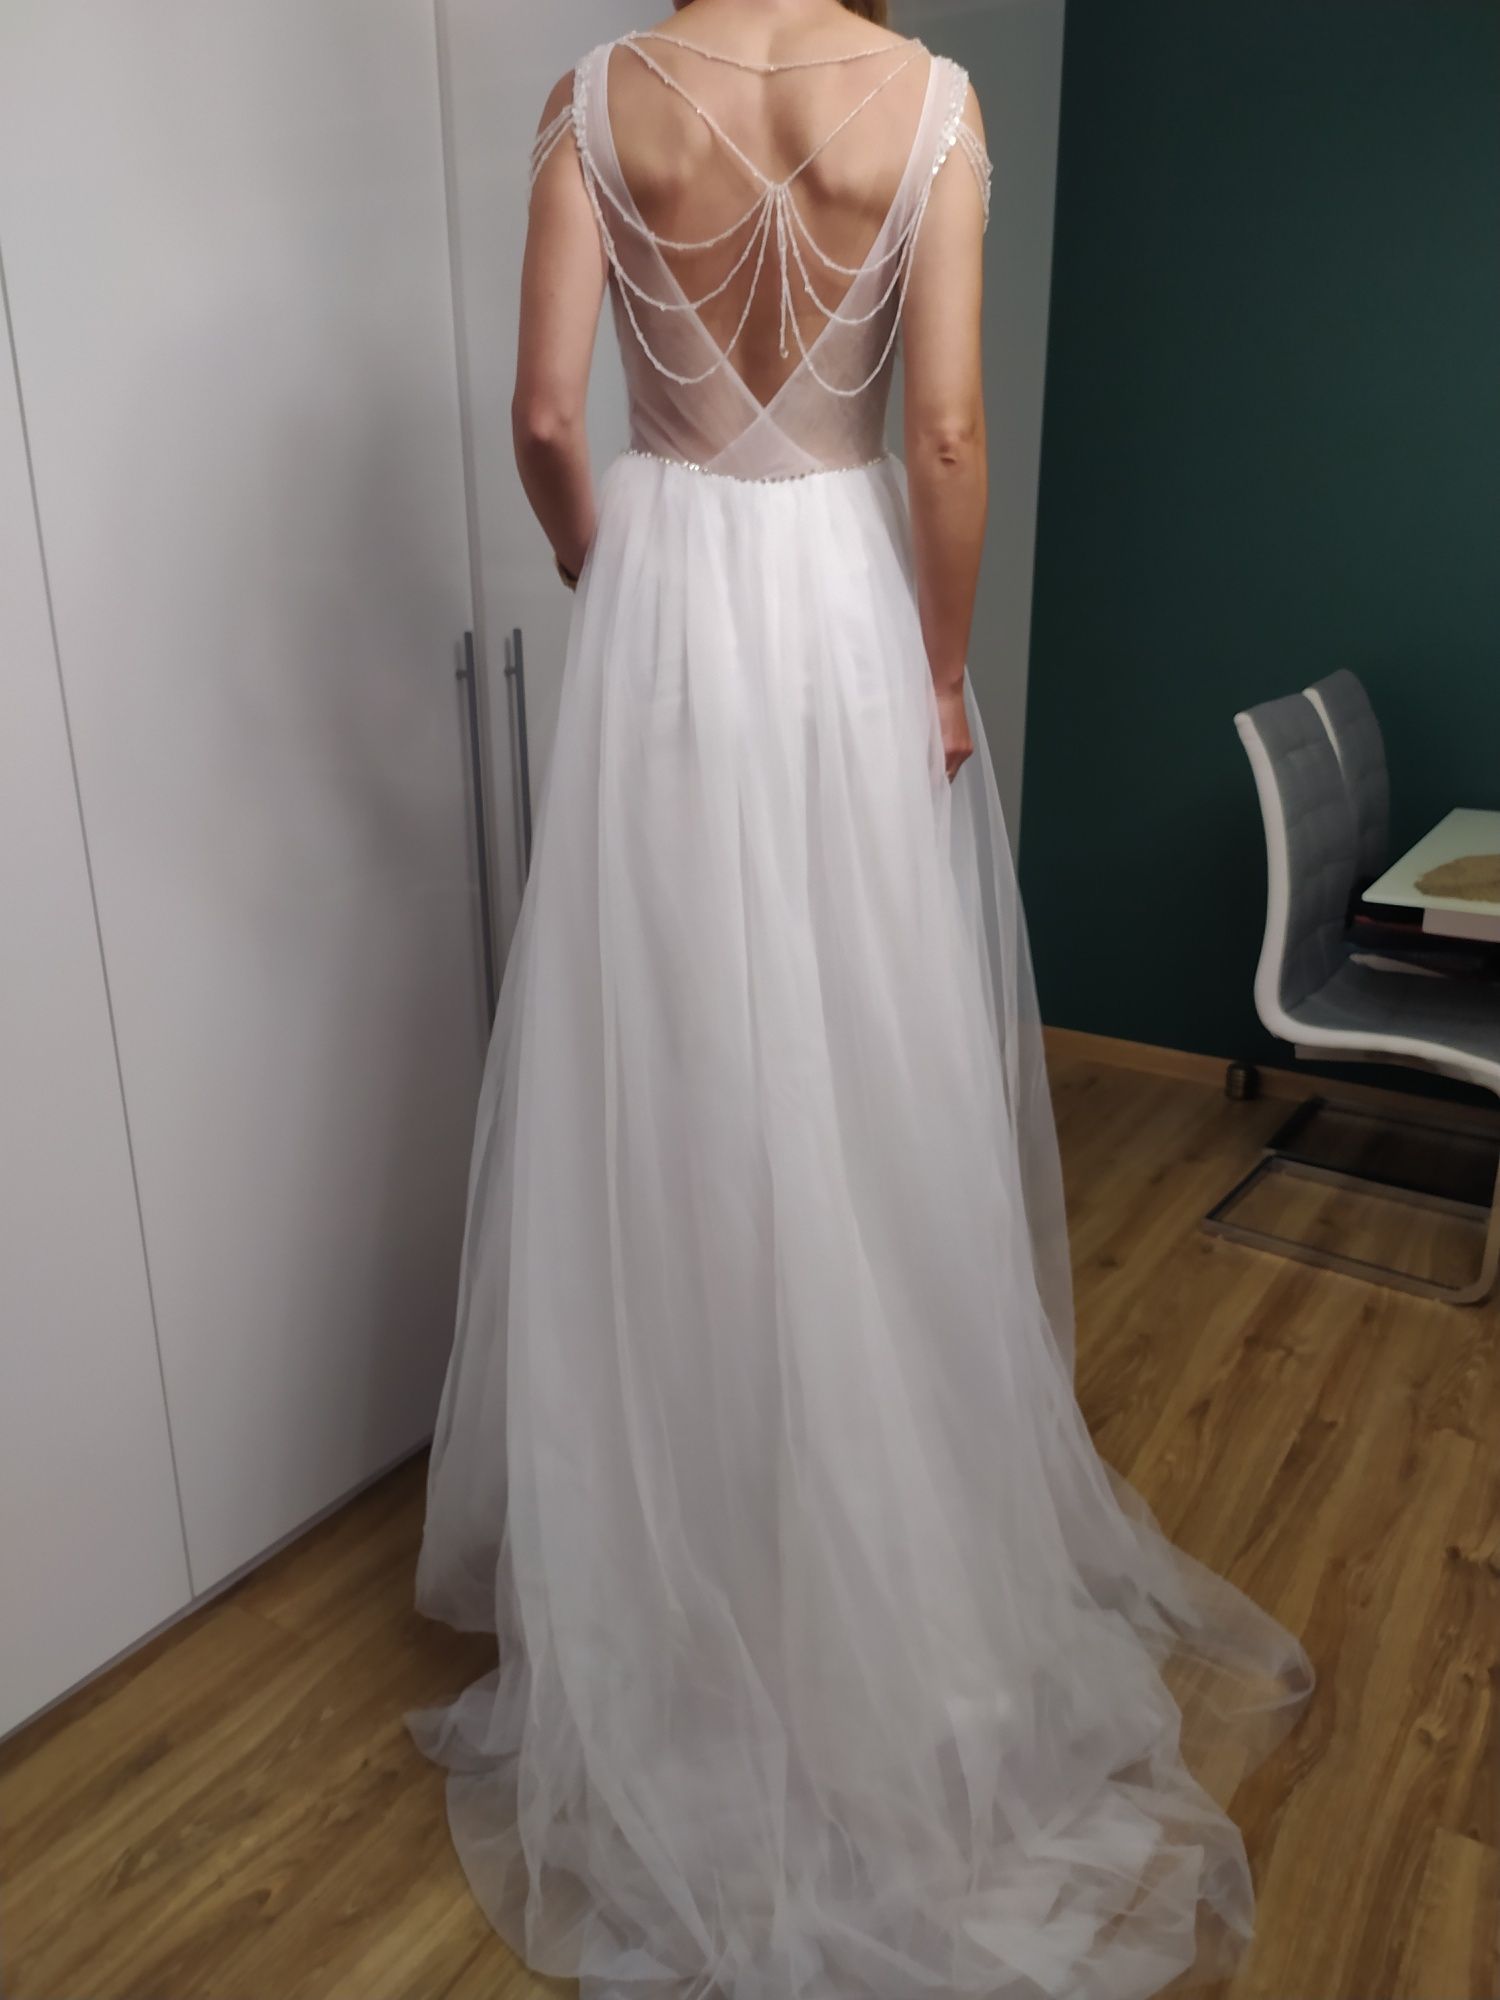 Sukienka ślubna rozmiar 38, 10.biała, koronka, ramiączka, długa ,nowa